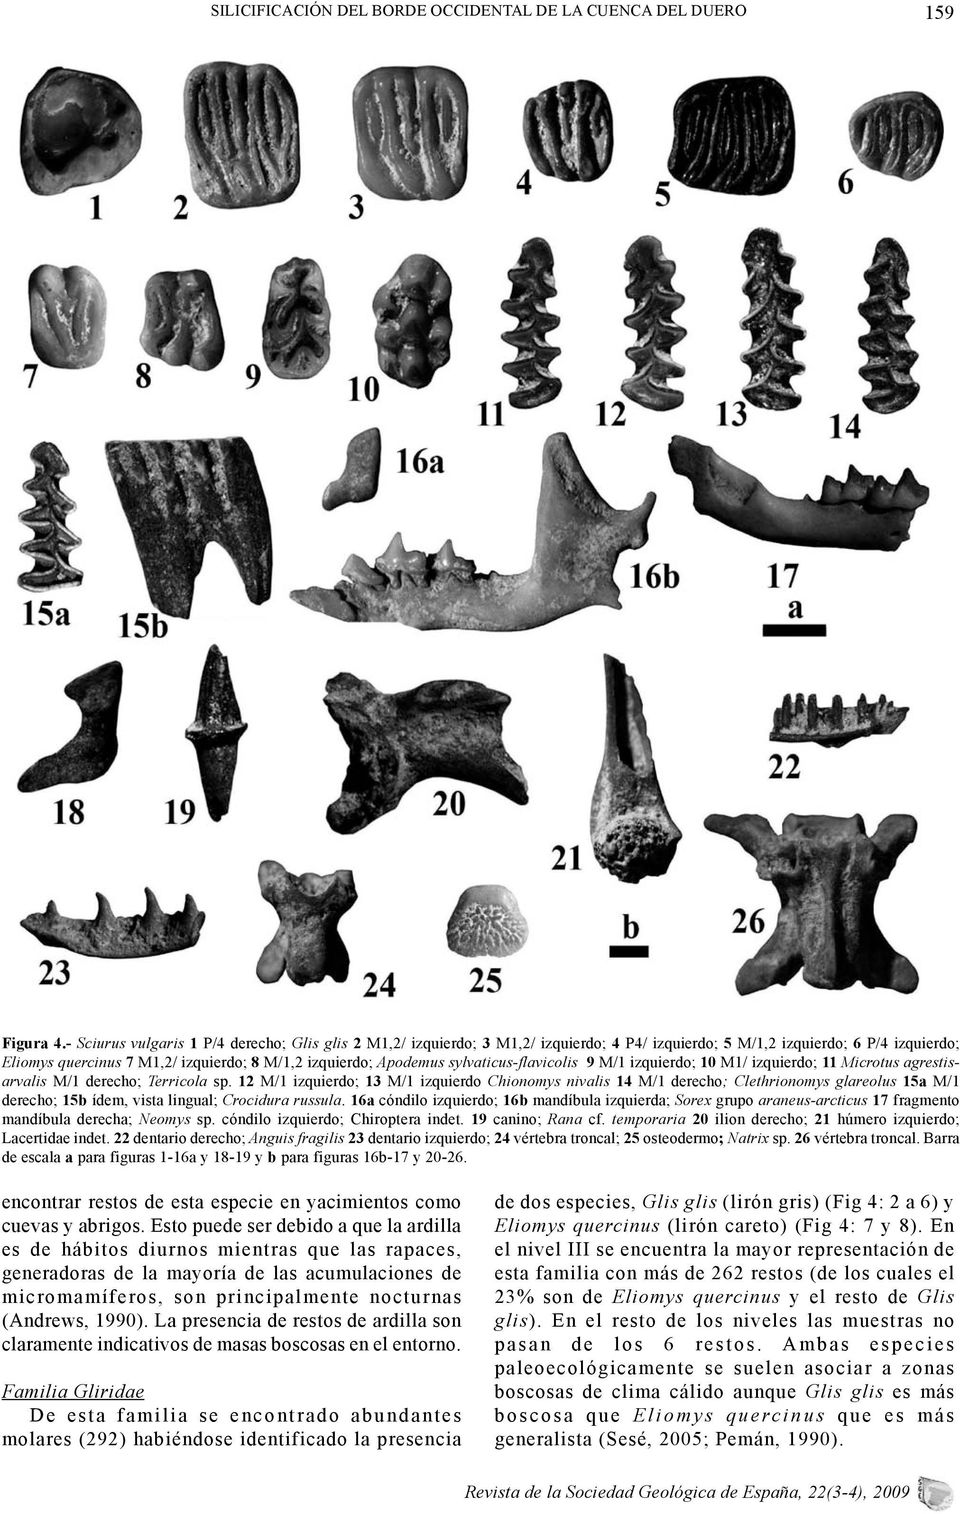 sylvaticus-flavicolis 9 M/1 izquierdo; 10 M1/ izquierdo; 11 Microtus agrestisarvalis M/1 derecho; Terricola sp.